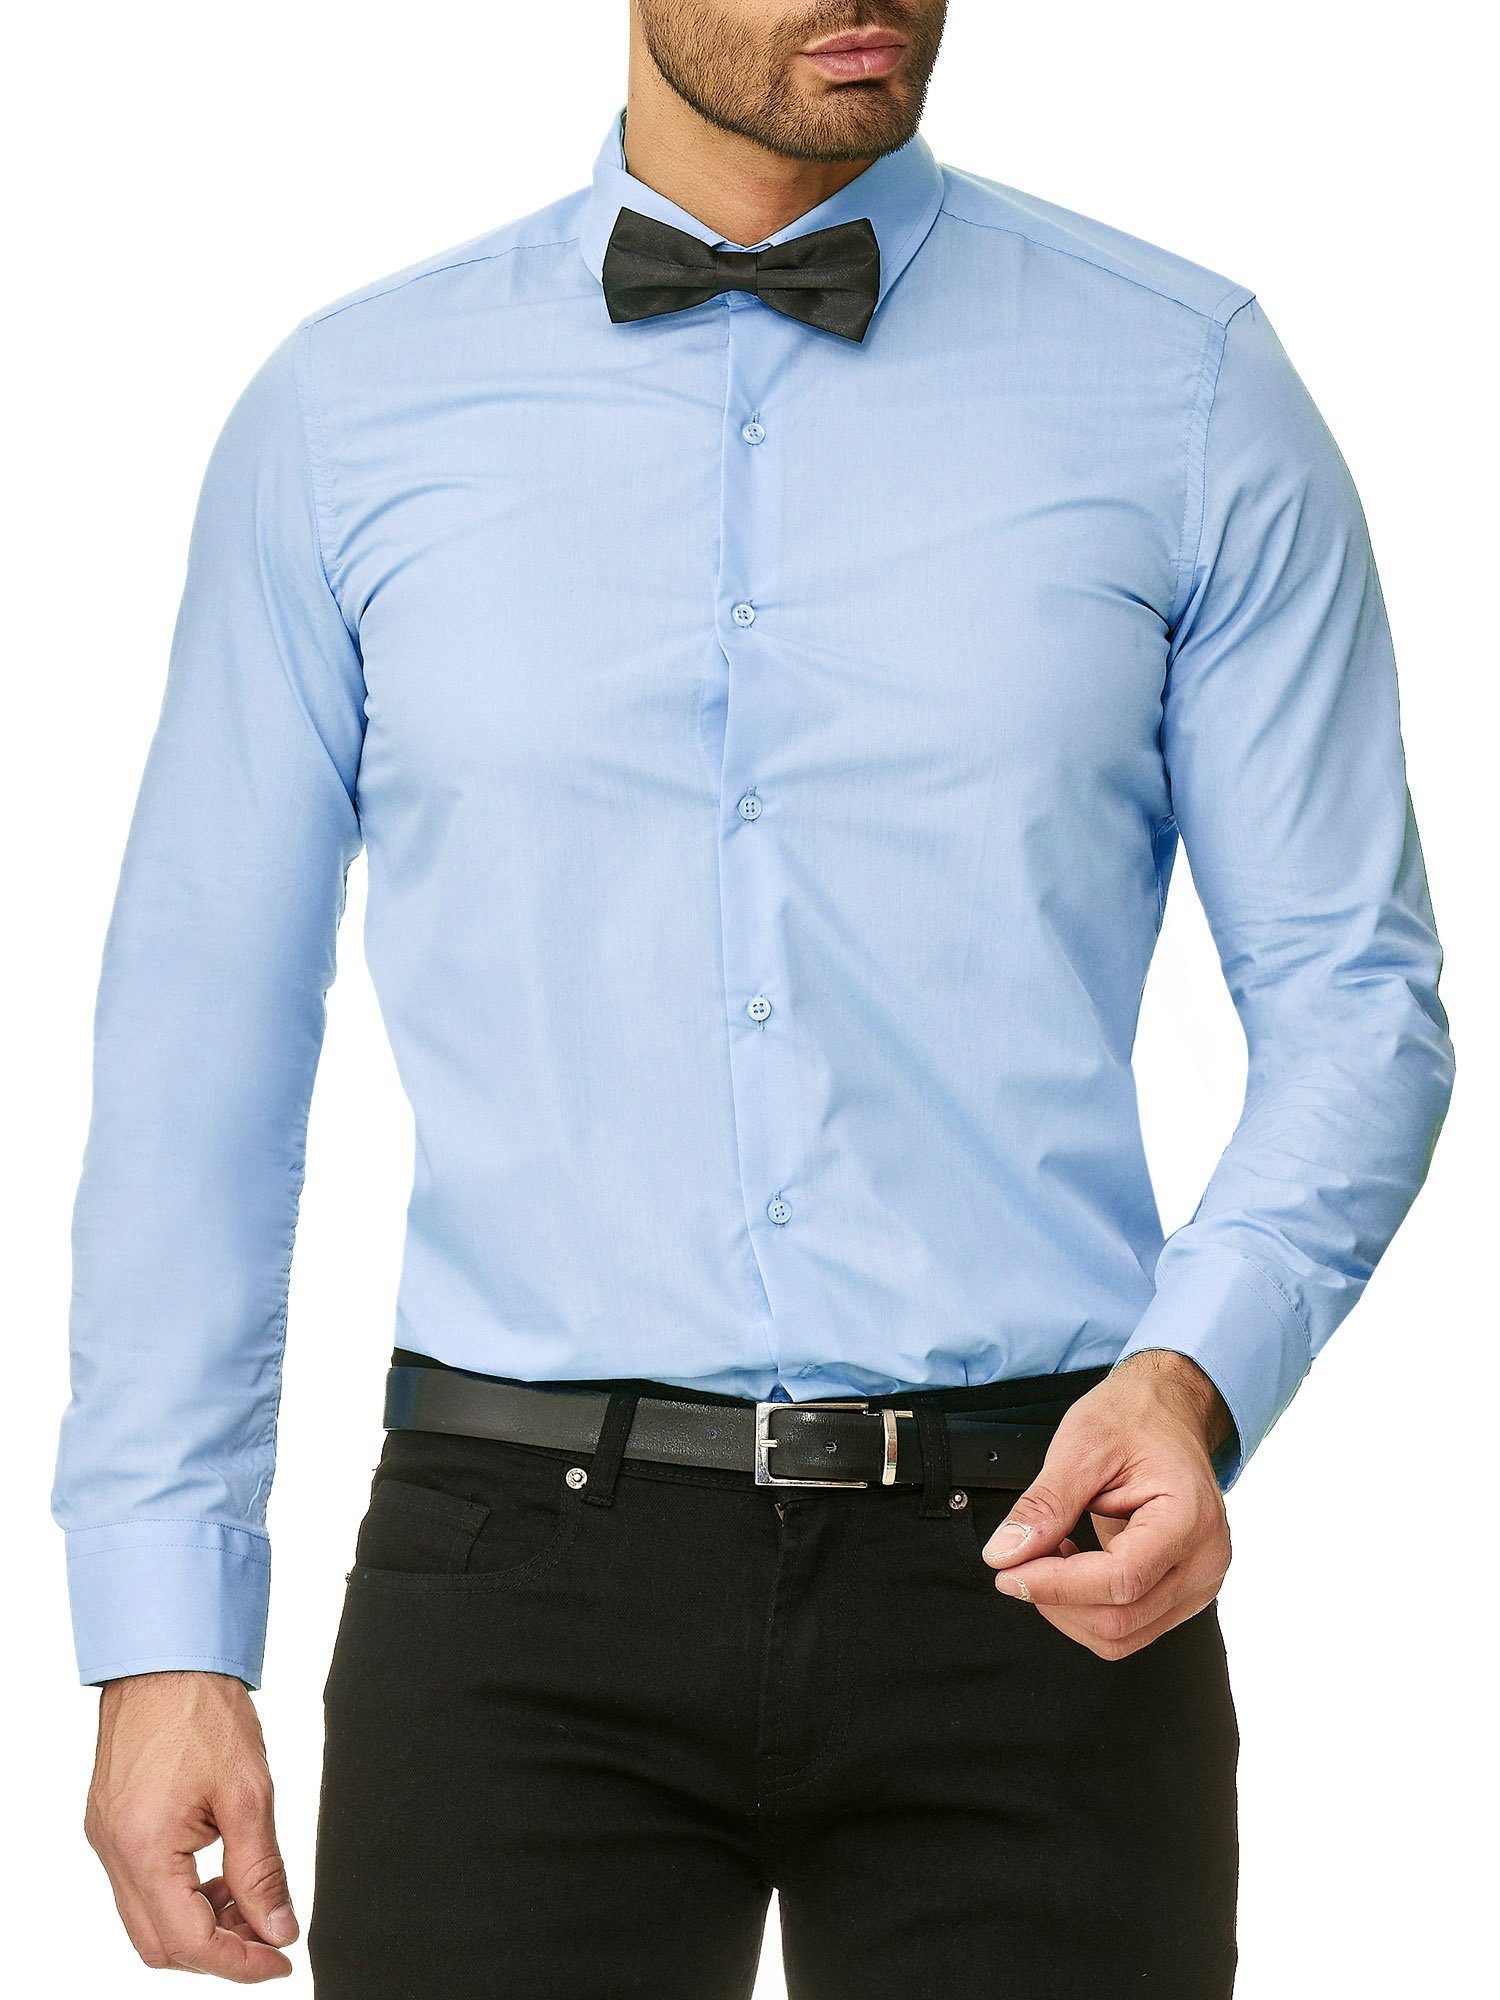 Reslad Langarmhemd Reslad Herren-Hemd Slim-Fit + Fliege SET Bügelleic  Freizeithemd Businesshemd Hemd + Fliege SET